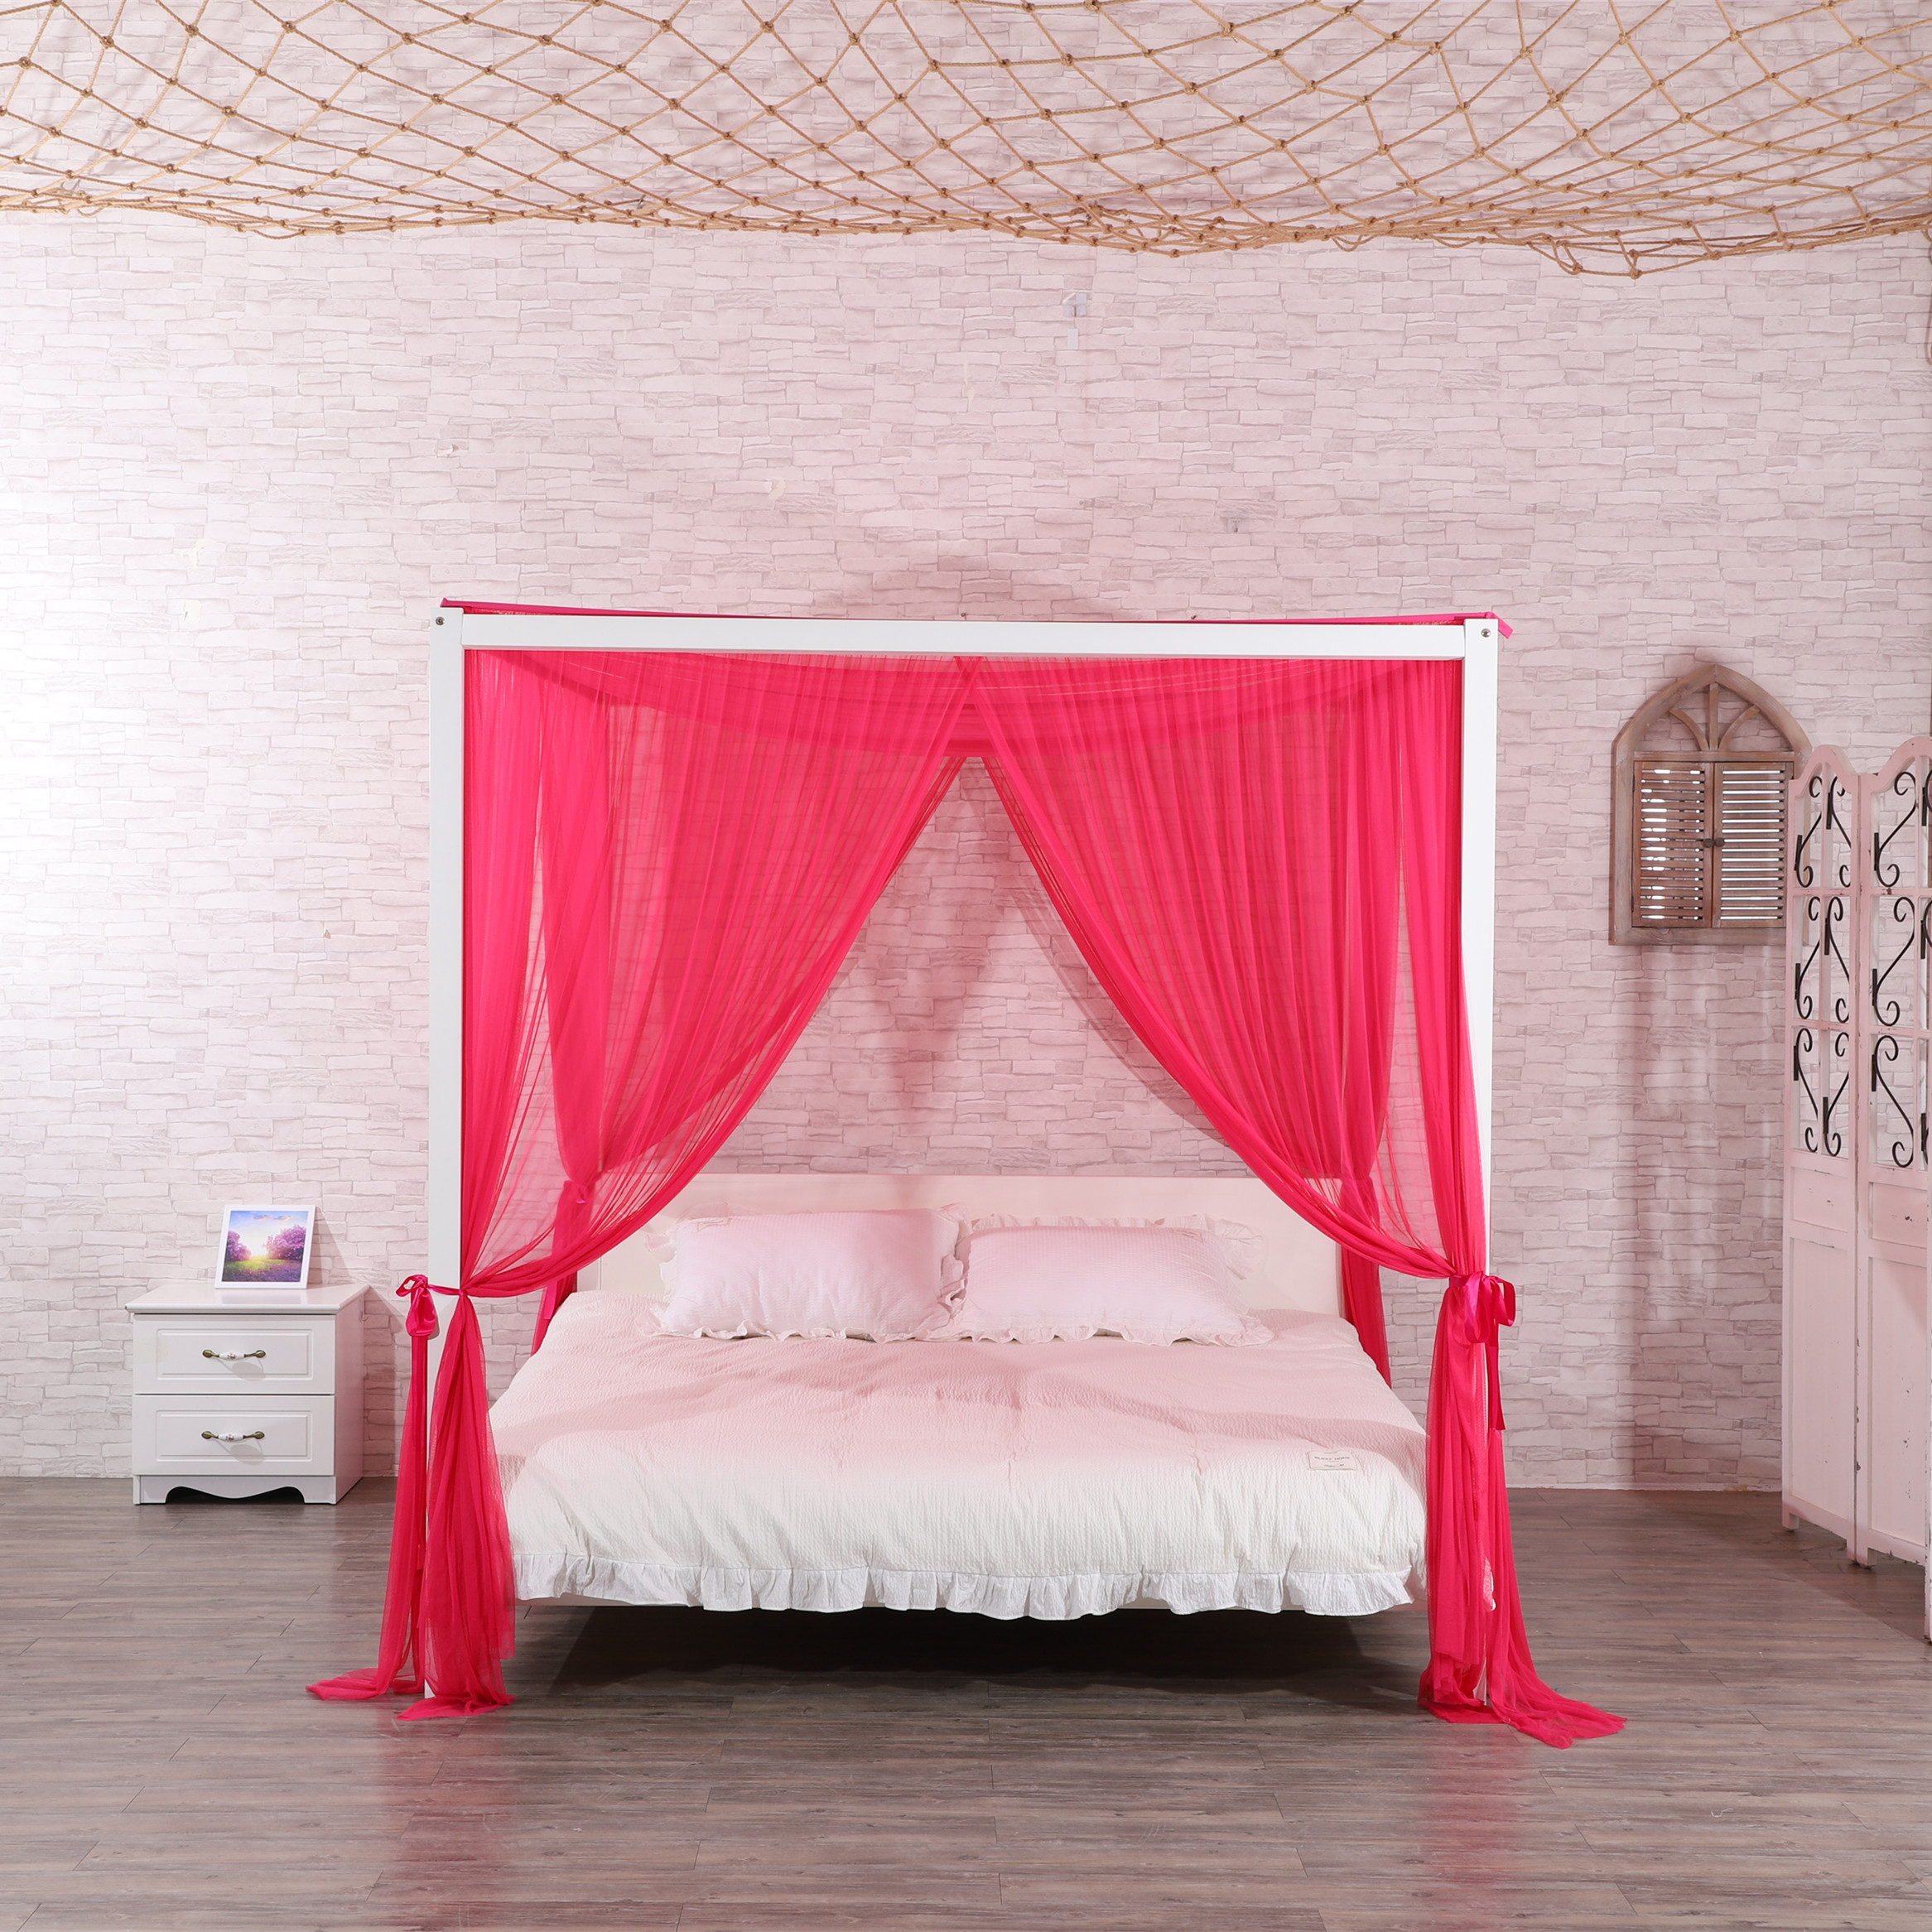 2020 nuevo estilo 100% poliéster de alta calidad forma Rectangular decoración del hogar cama doble red tamaño King mosquitera para cama